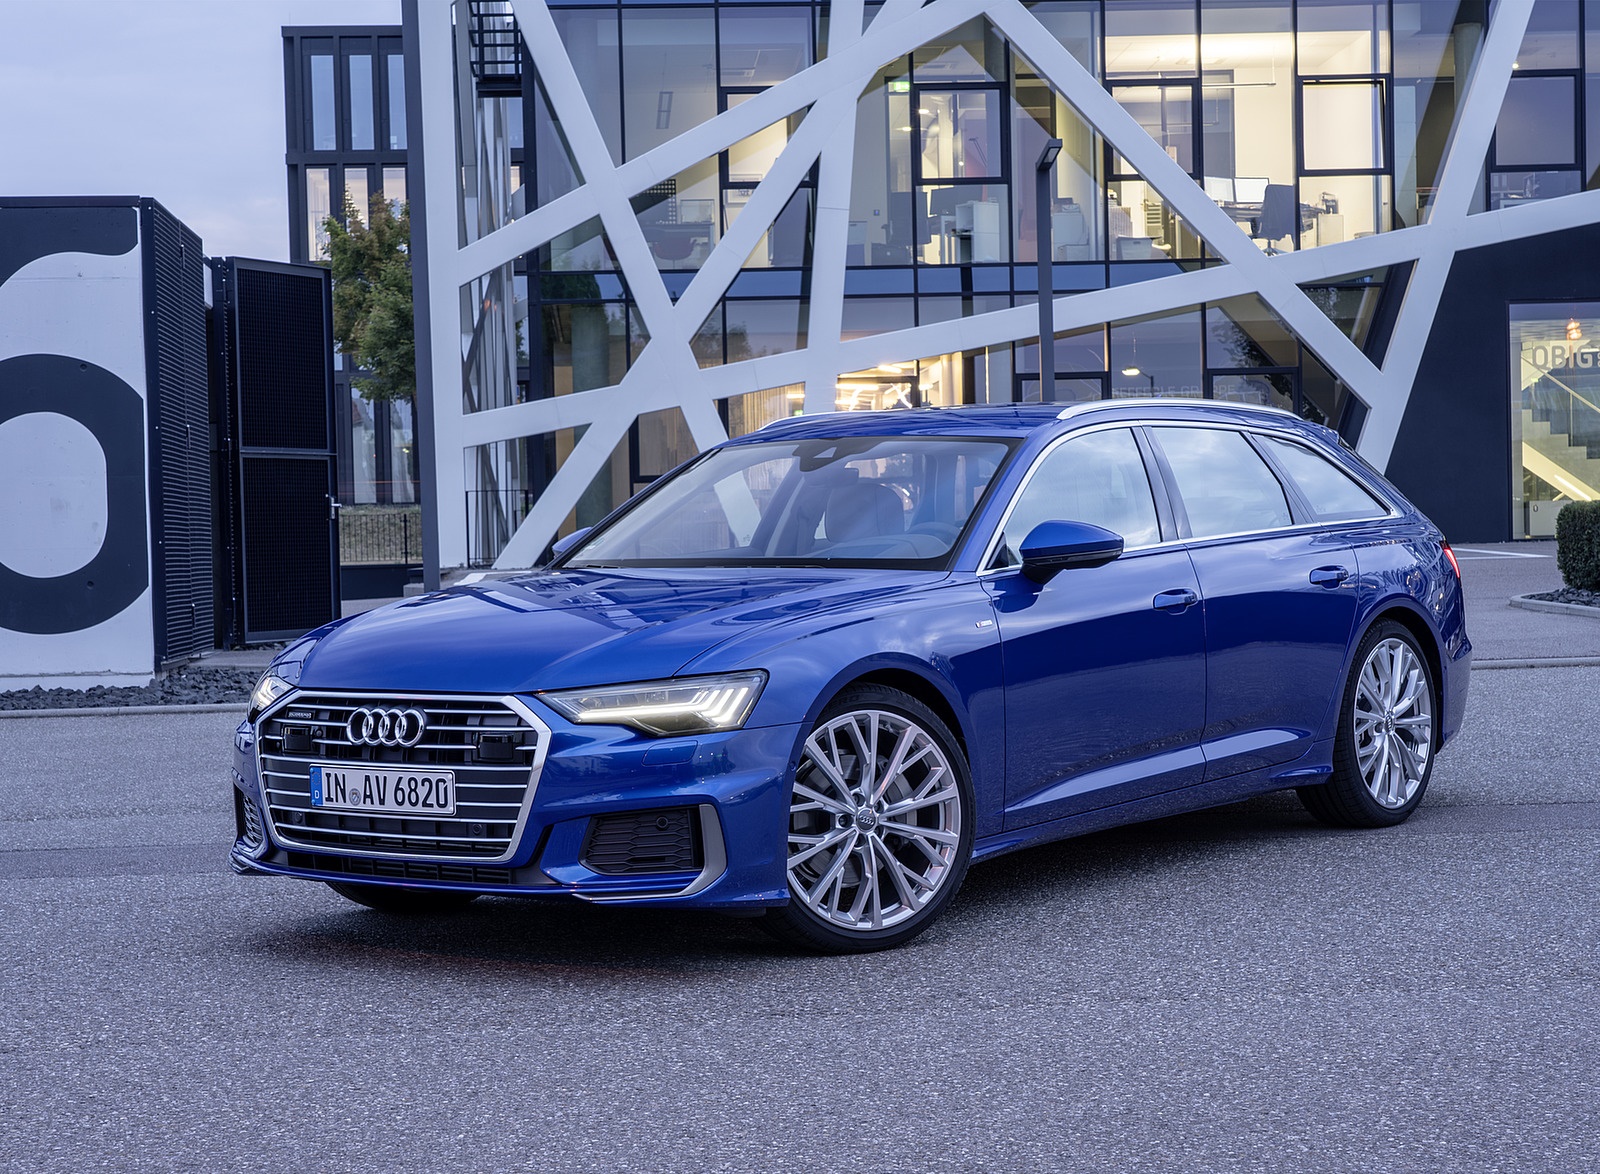 2019 Audi A6 Avant (Color: Sepang Blue) Front Three-Quarter Wallpapers #33 of 86